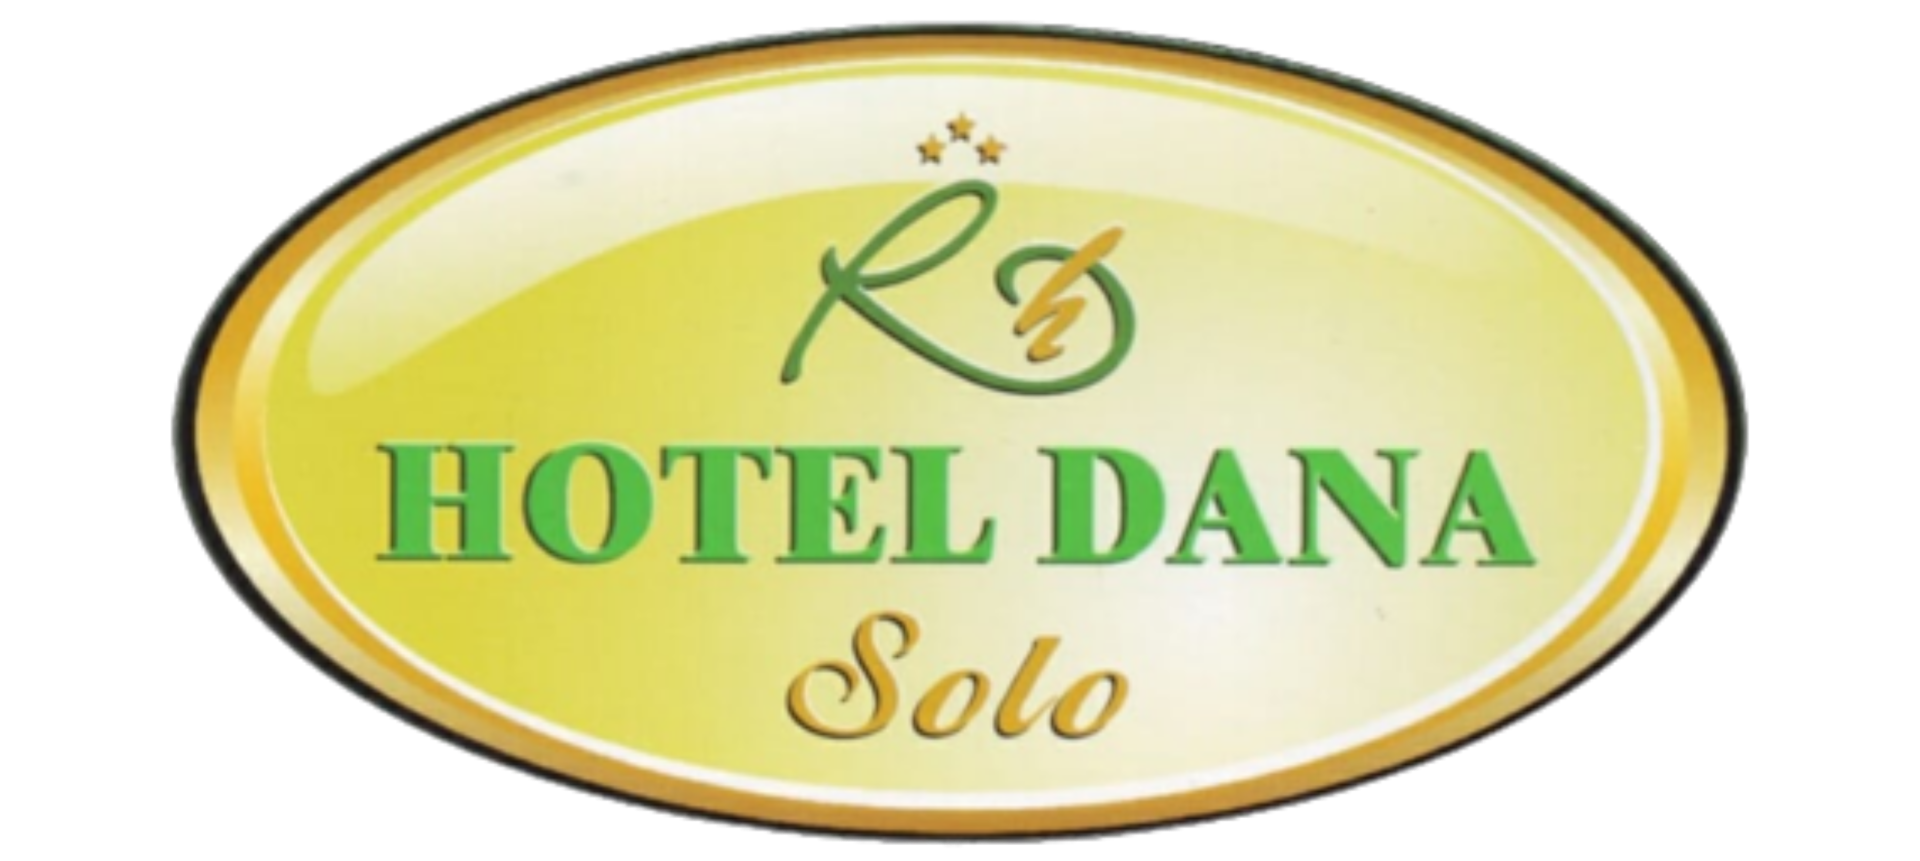 Hotel Dana Solo